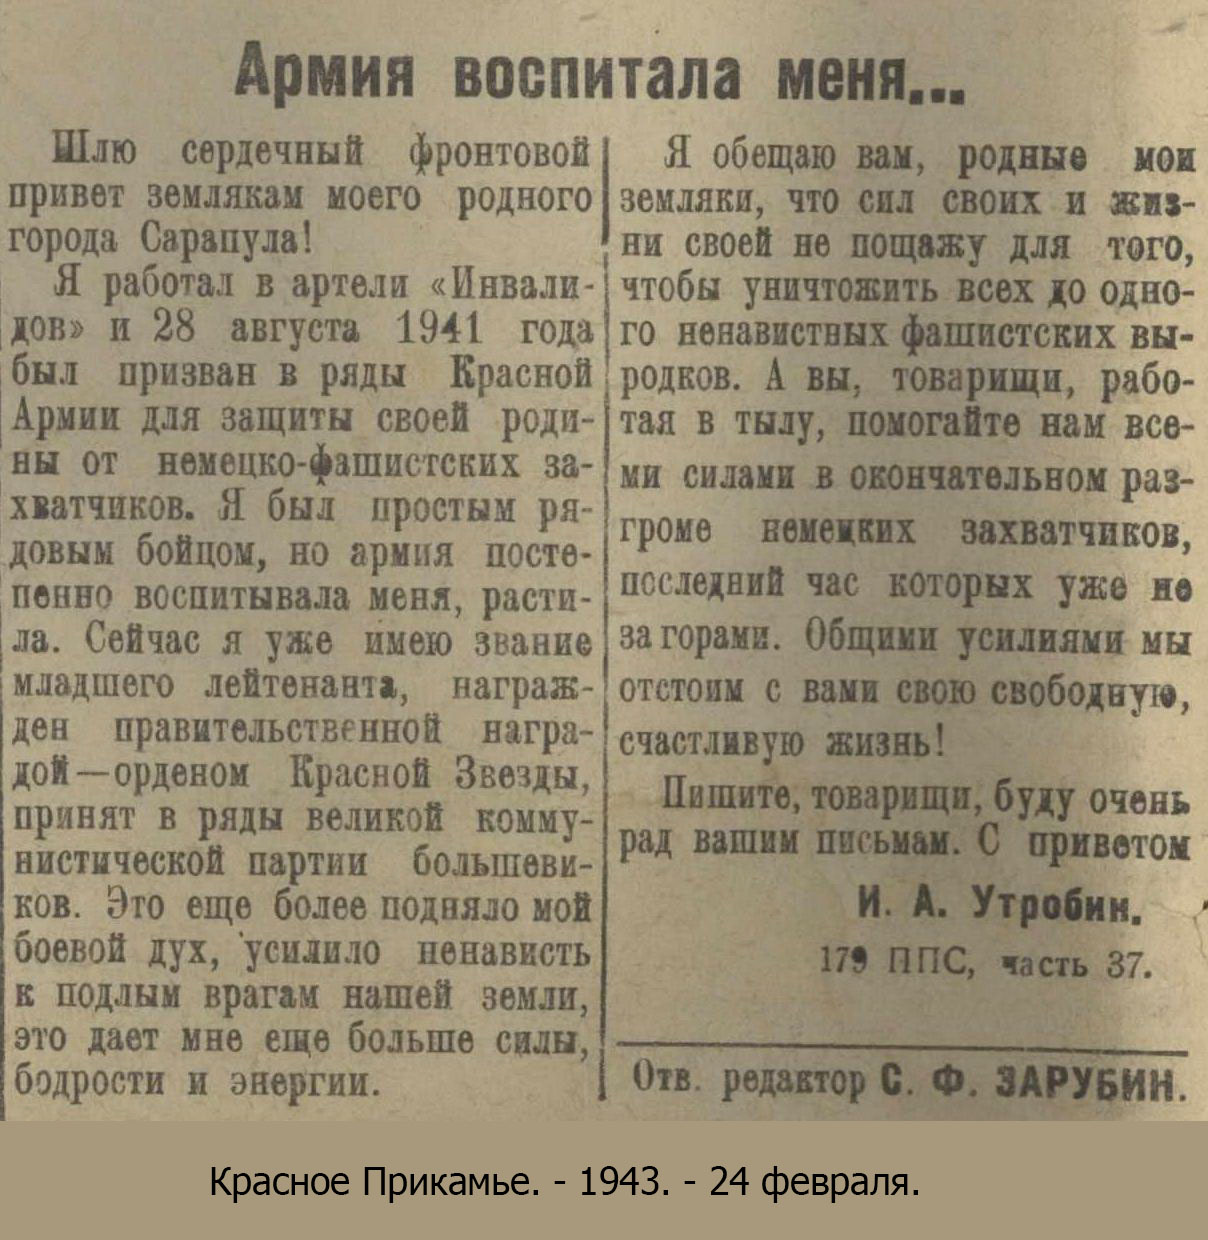 Красное Прикамье. - 1943. - 24 февраля.